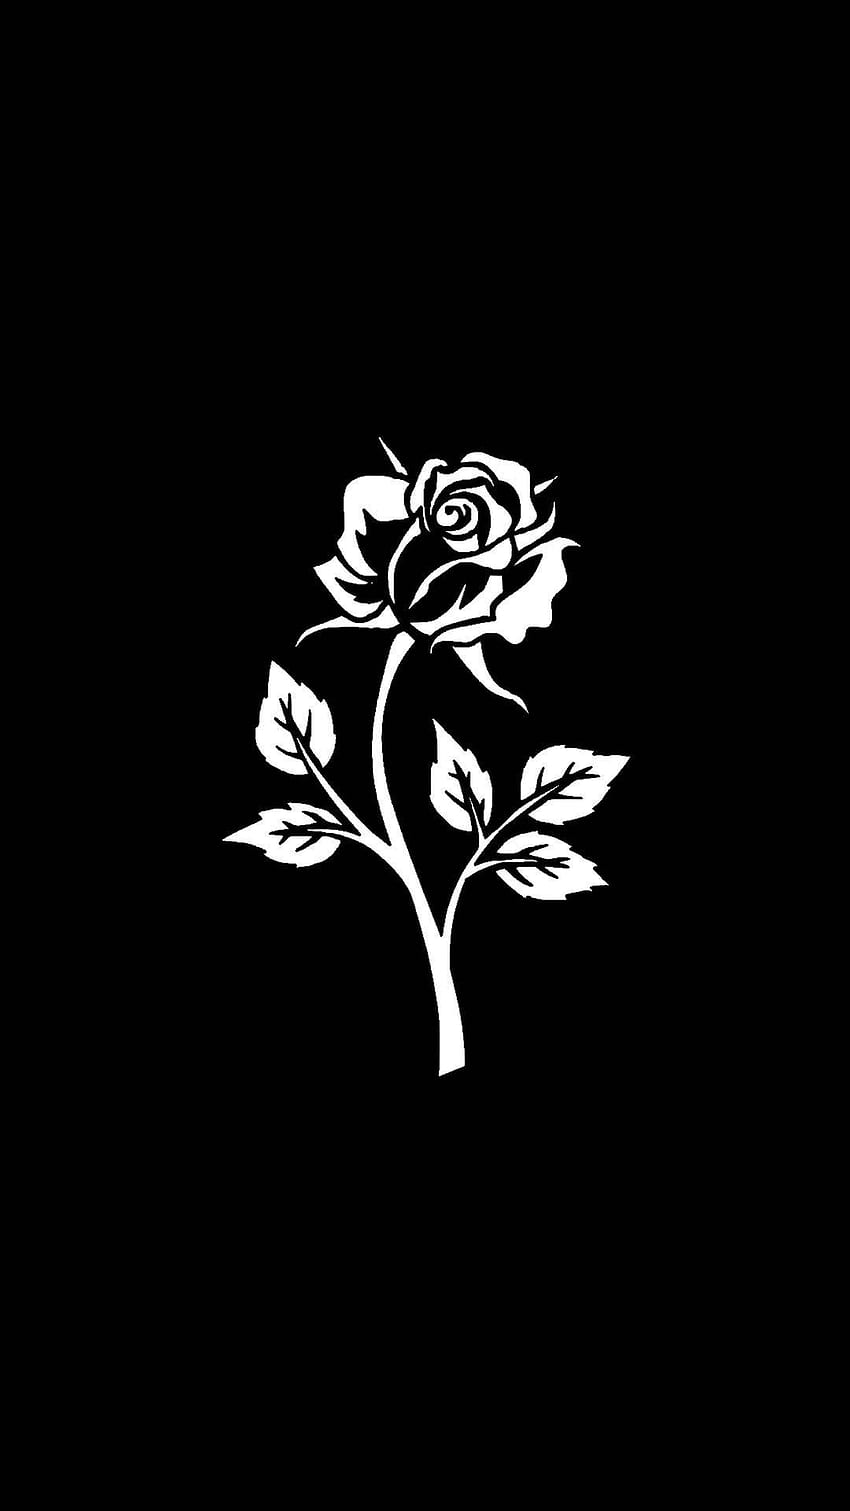 Hoa hồng đen trắng: Với những ai yêu thích nghệ thuật đen trắng, bộ sưu tập hoa hồng đen trắng này sẽ là lựa chọn hoàn hảo để trang trí cho chiếc điện thoại của mình. Với những hình ảnh tinh tế, đầy sức hút và cổ điển nhưng vẫn đầy tươi mới, chắc chắn bạn sẽ không thể cưỡng lại được sức hút của chúng. Hãy tải về ngay để có một trải nghiệm độc đáo và đầy nghệ thuật.